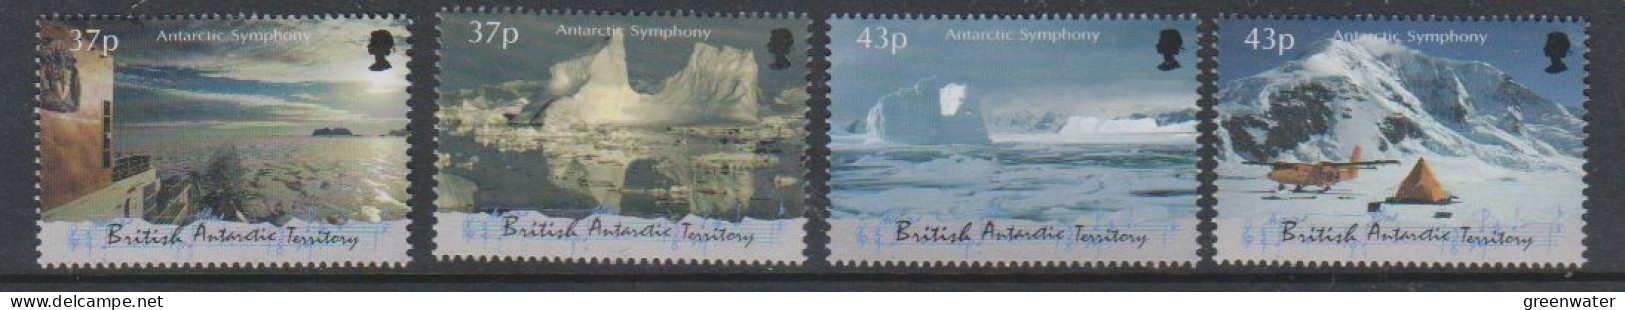 British Antarctic Territory (BAT) 2000 Antarctic Symphony 4v** Mnh (59512A) - Ongebruikt